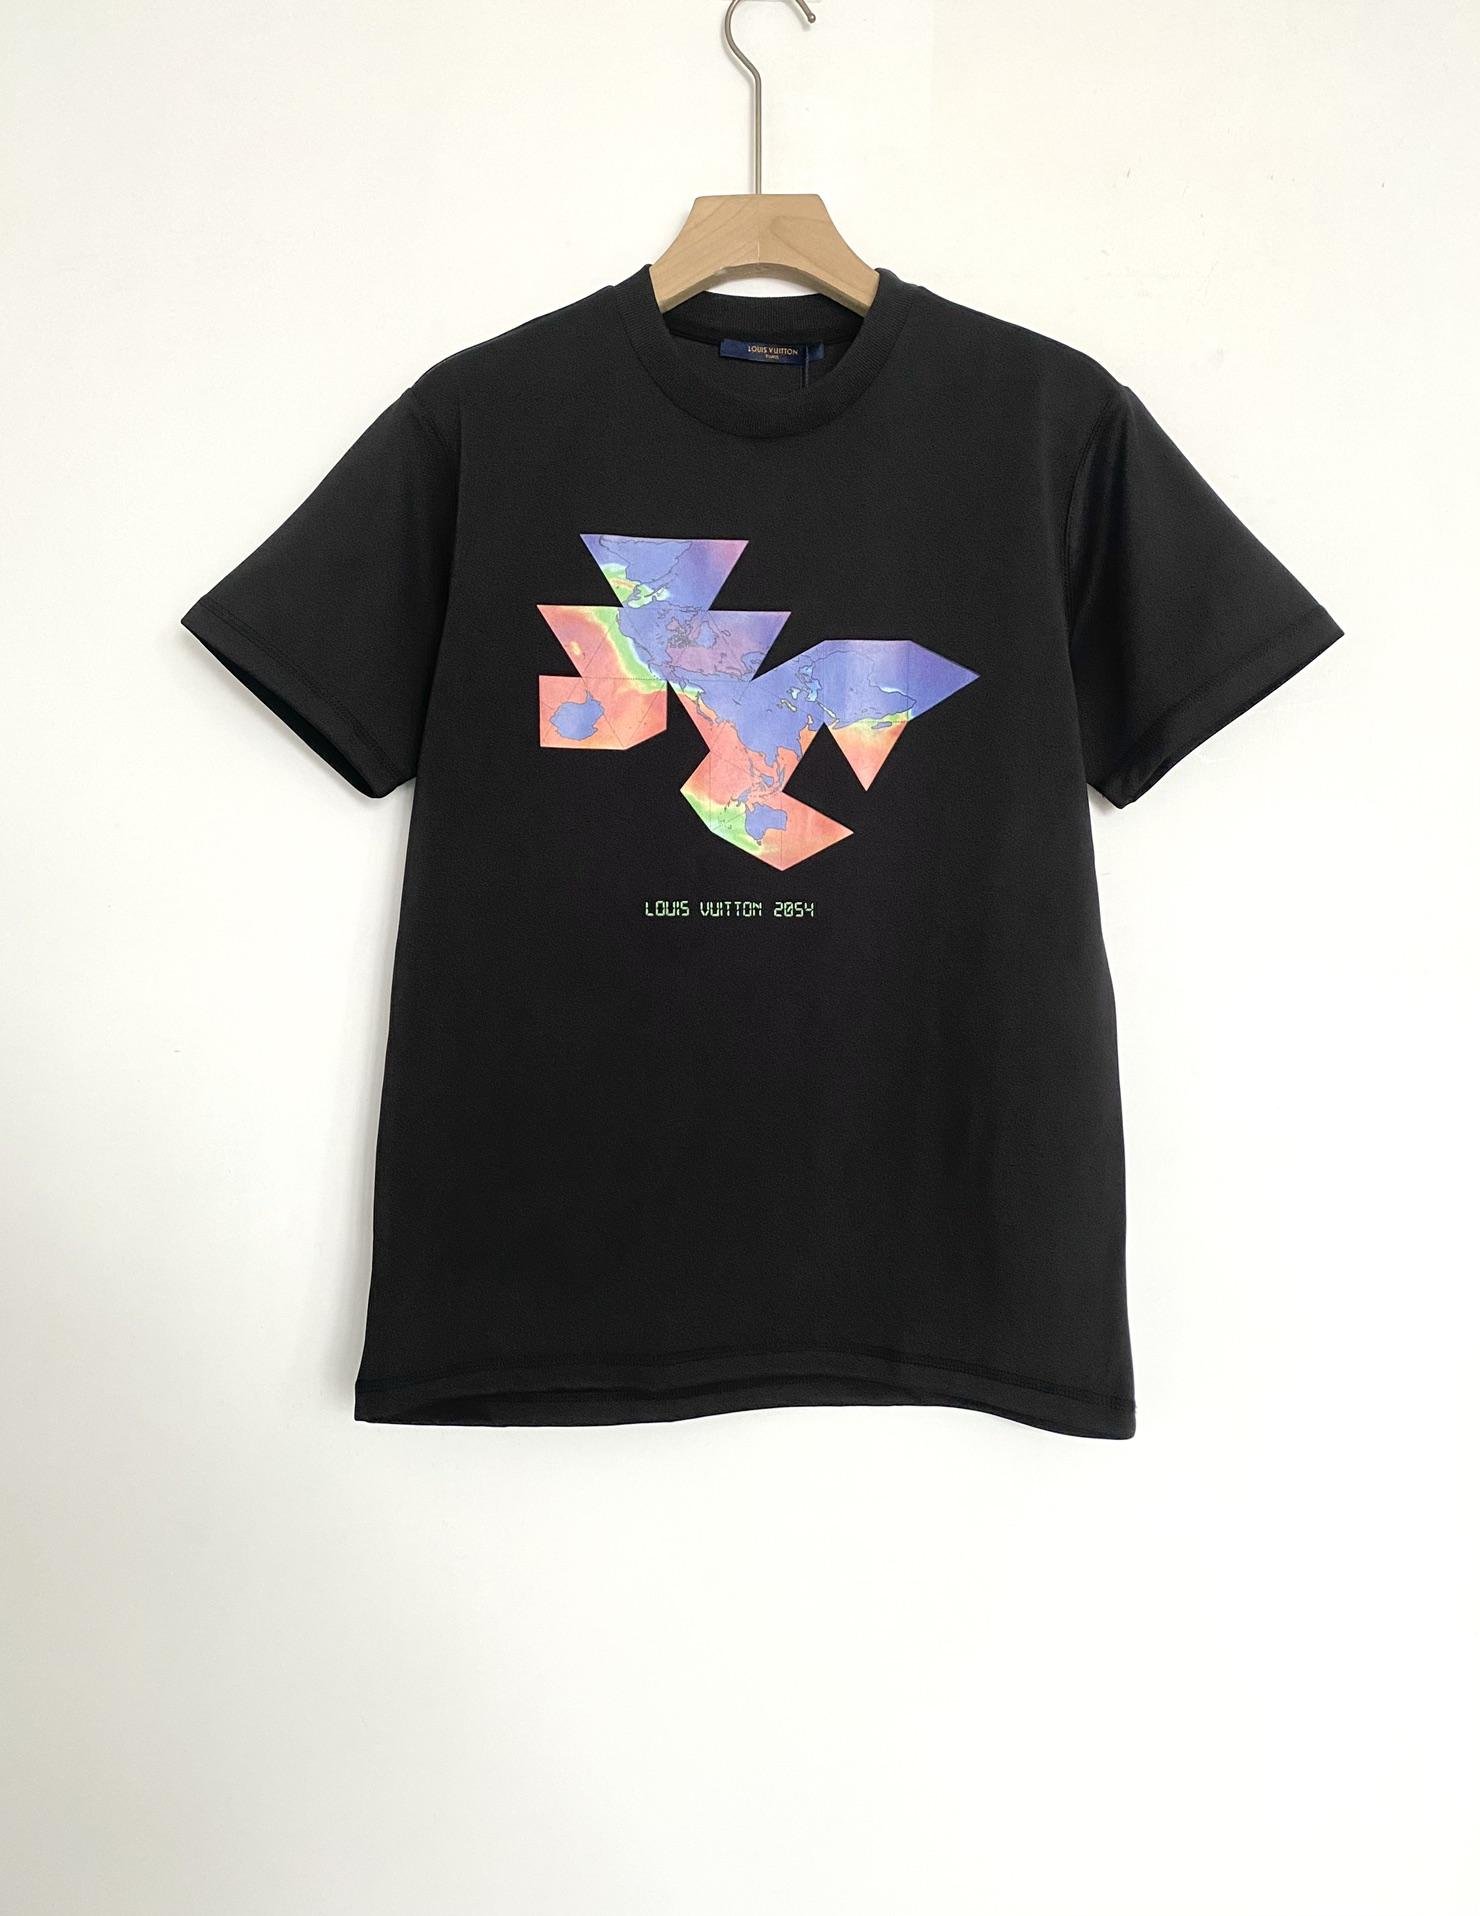               2054 PRINTED FLOWER PACKABLE T-SHIRT,hot sale     -shirt 3